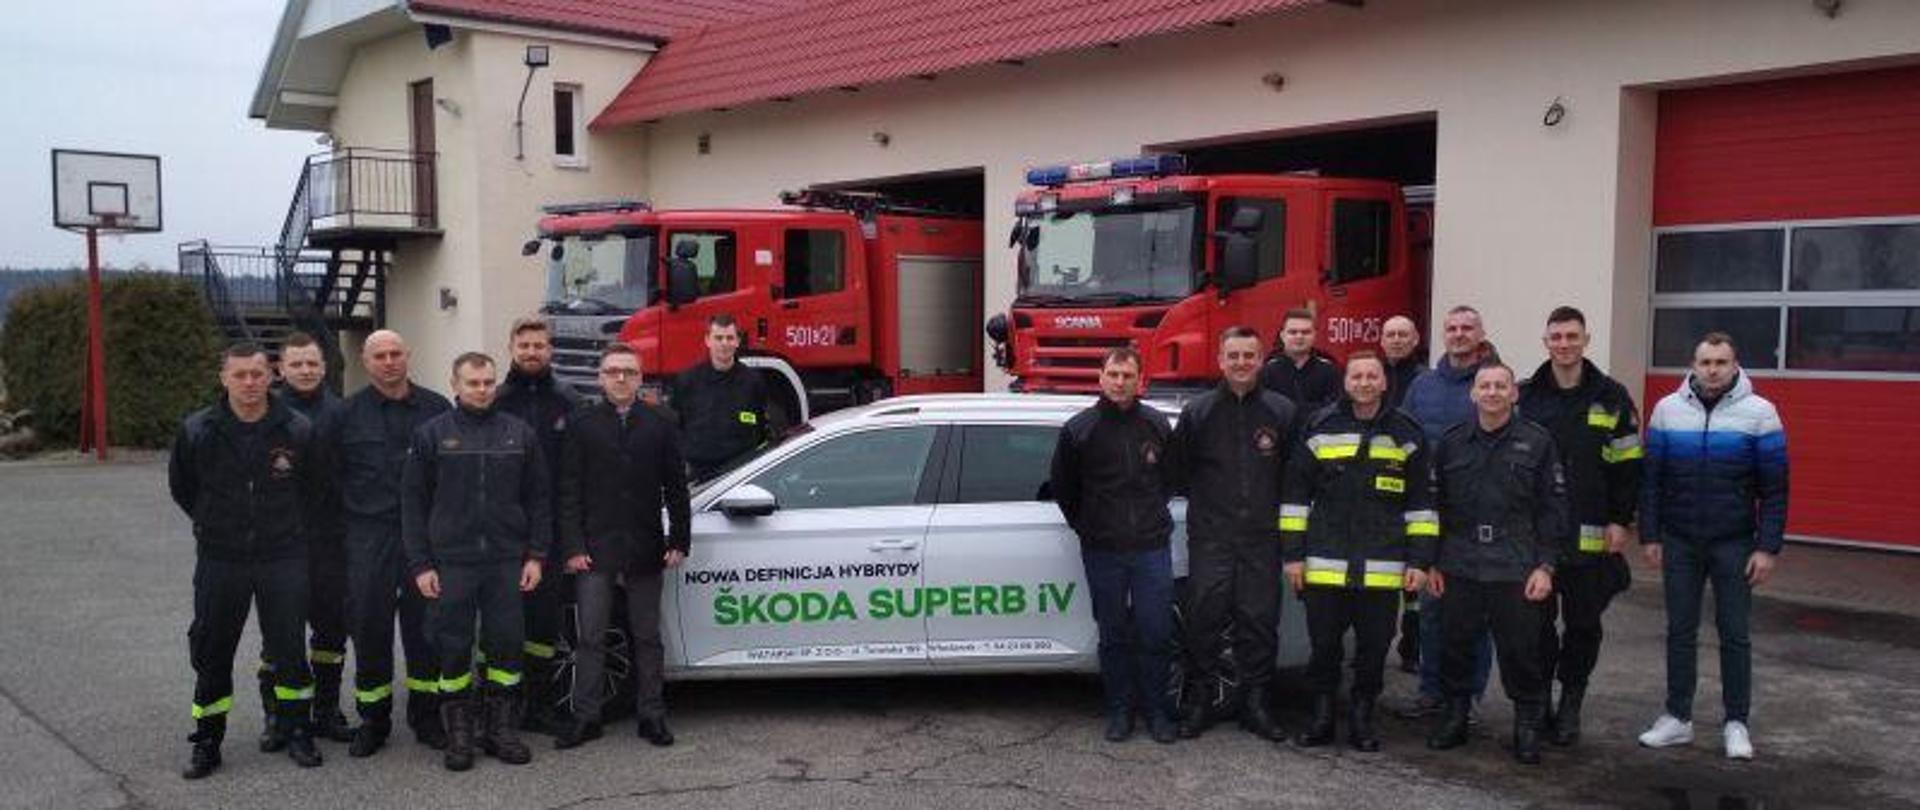 Zdjęcie zbiorowe strażaków na placu KP PSP na tle samochodu Skoda Superb iV i samochodów strażackich.